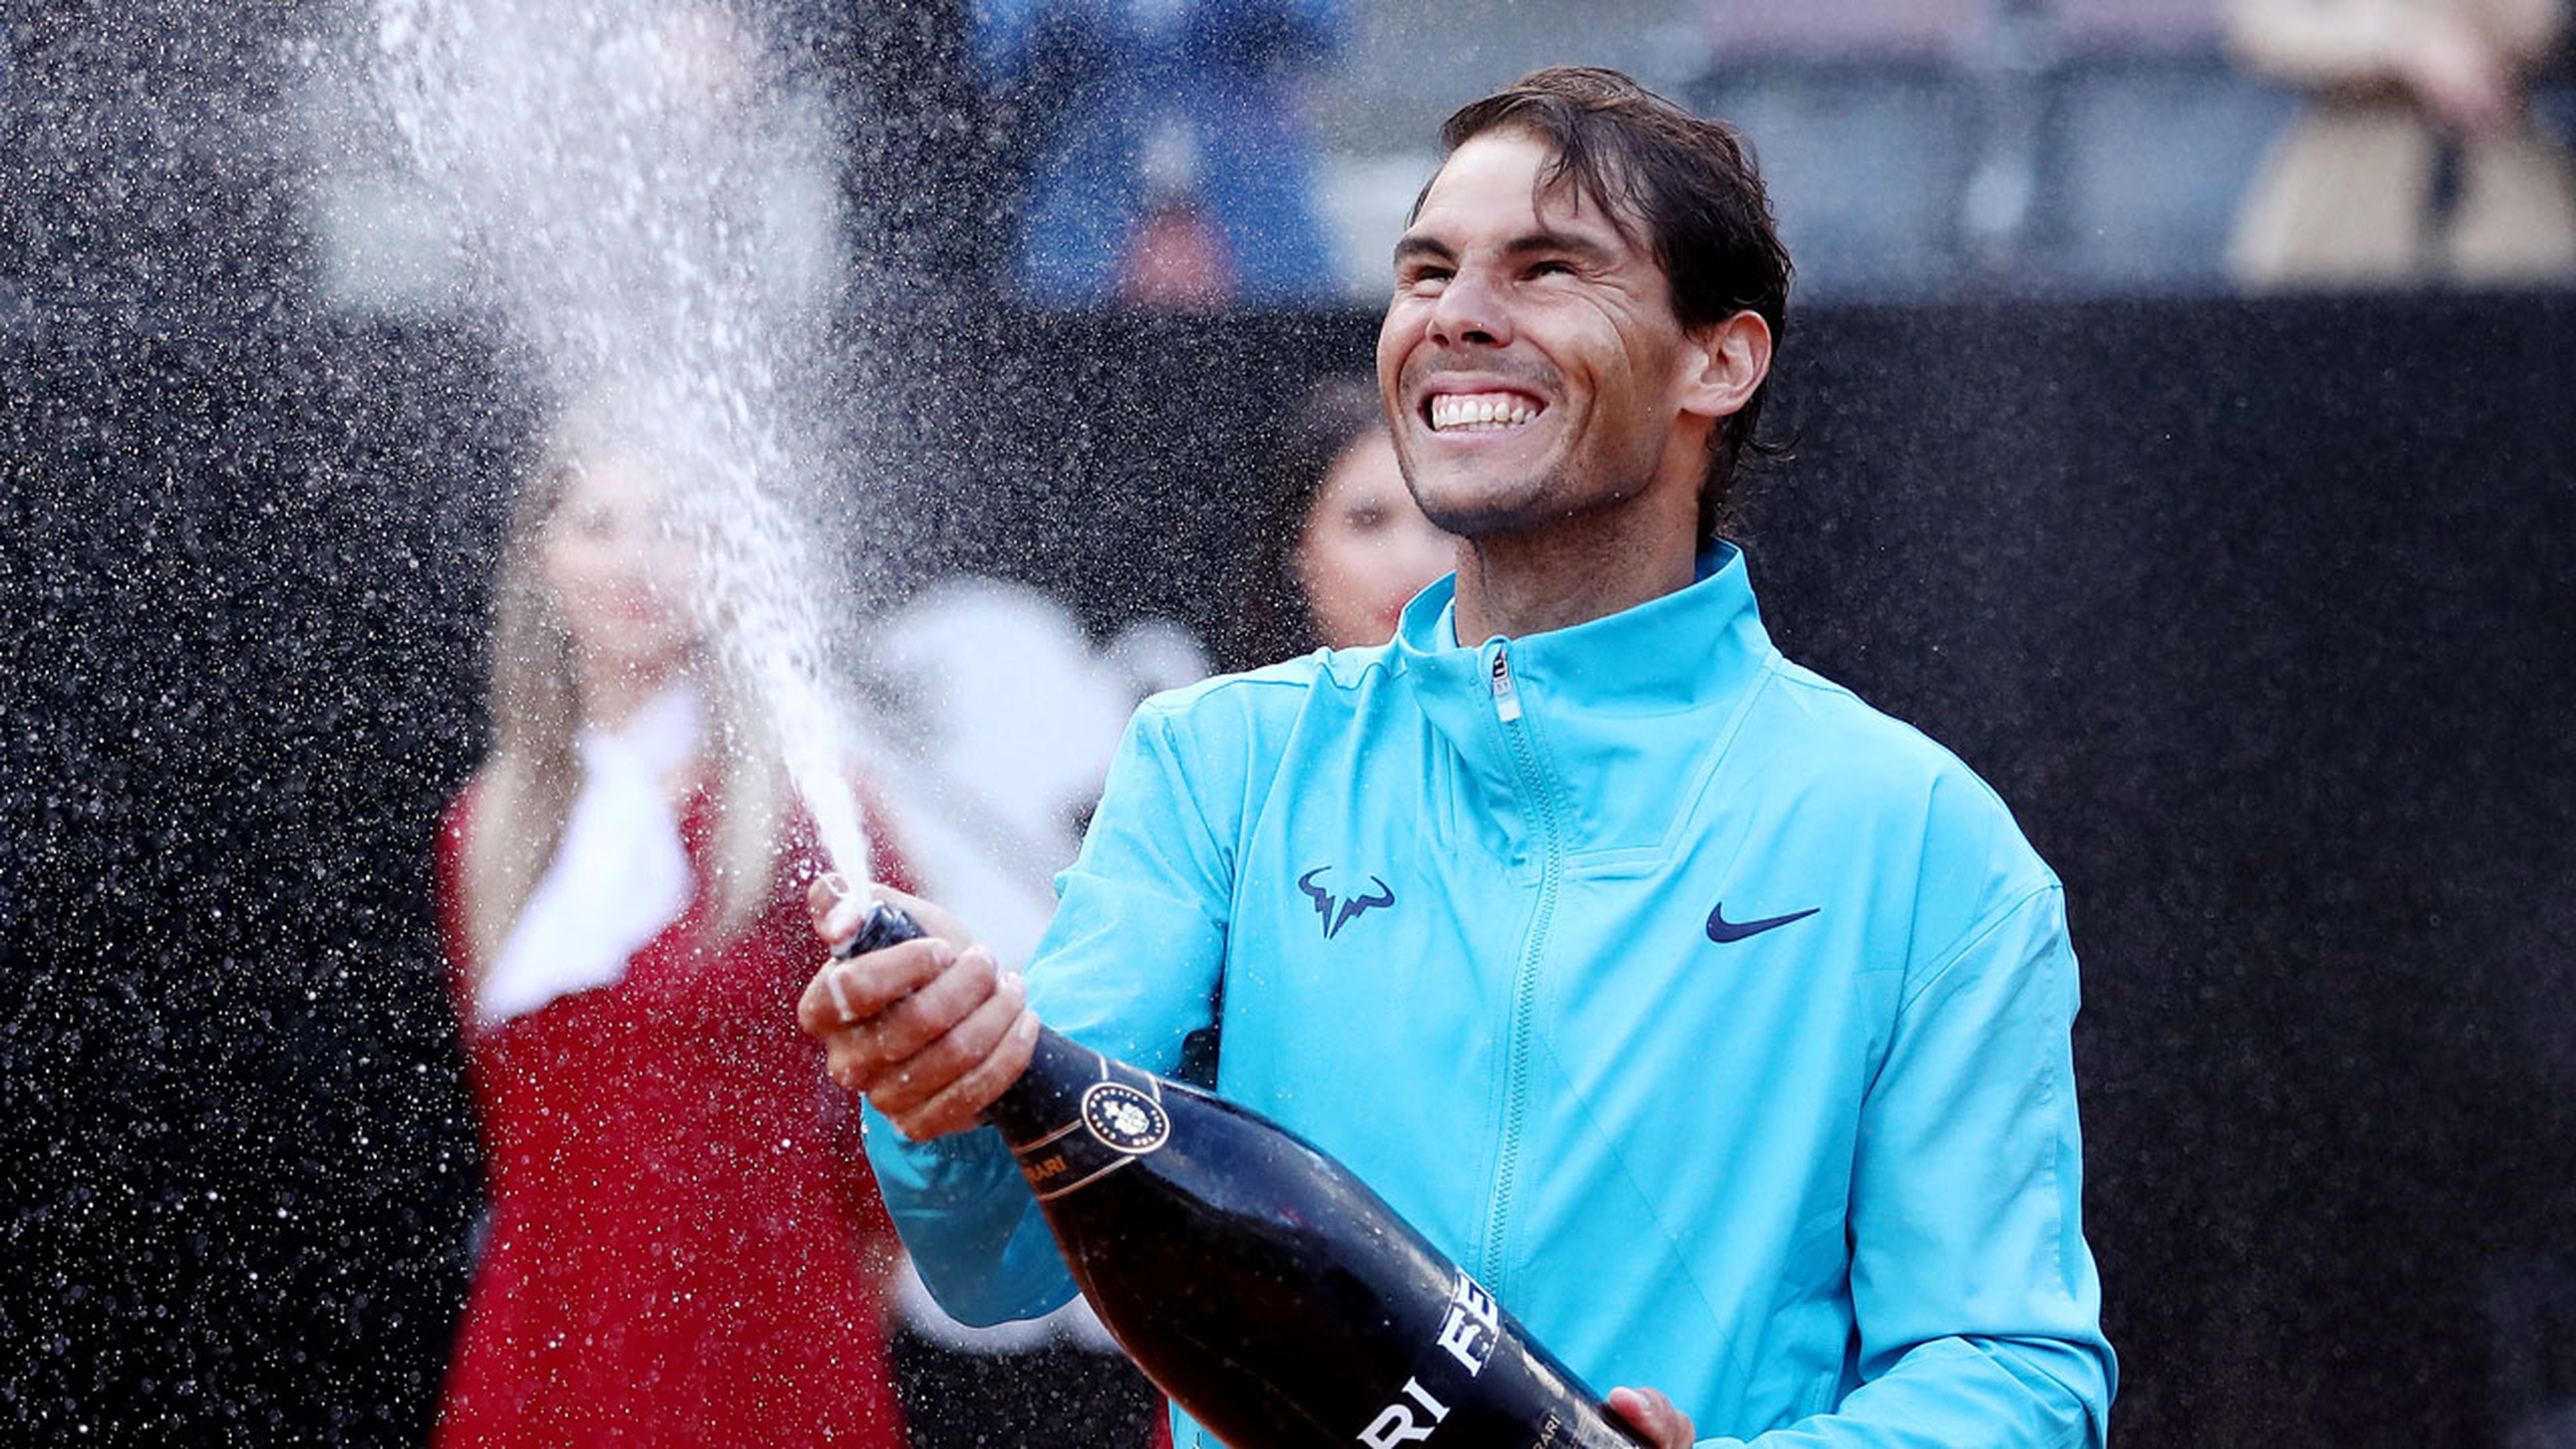 Rafa Nadal, campeón del Masters 1.000 de Roma de 2019 tras derrotar en la final a Djokovic por 6-0, 4-6 y 6-1.